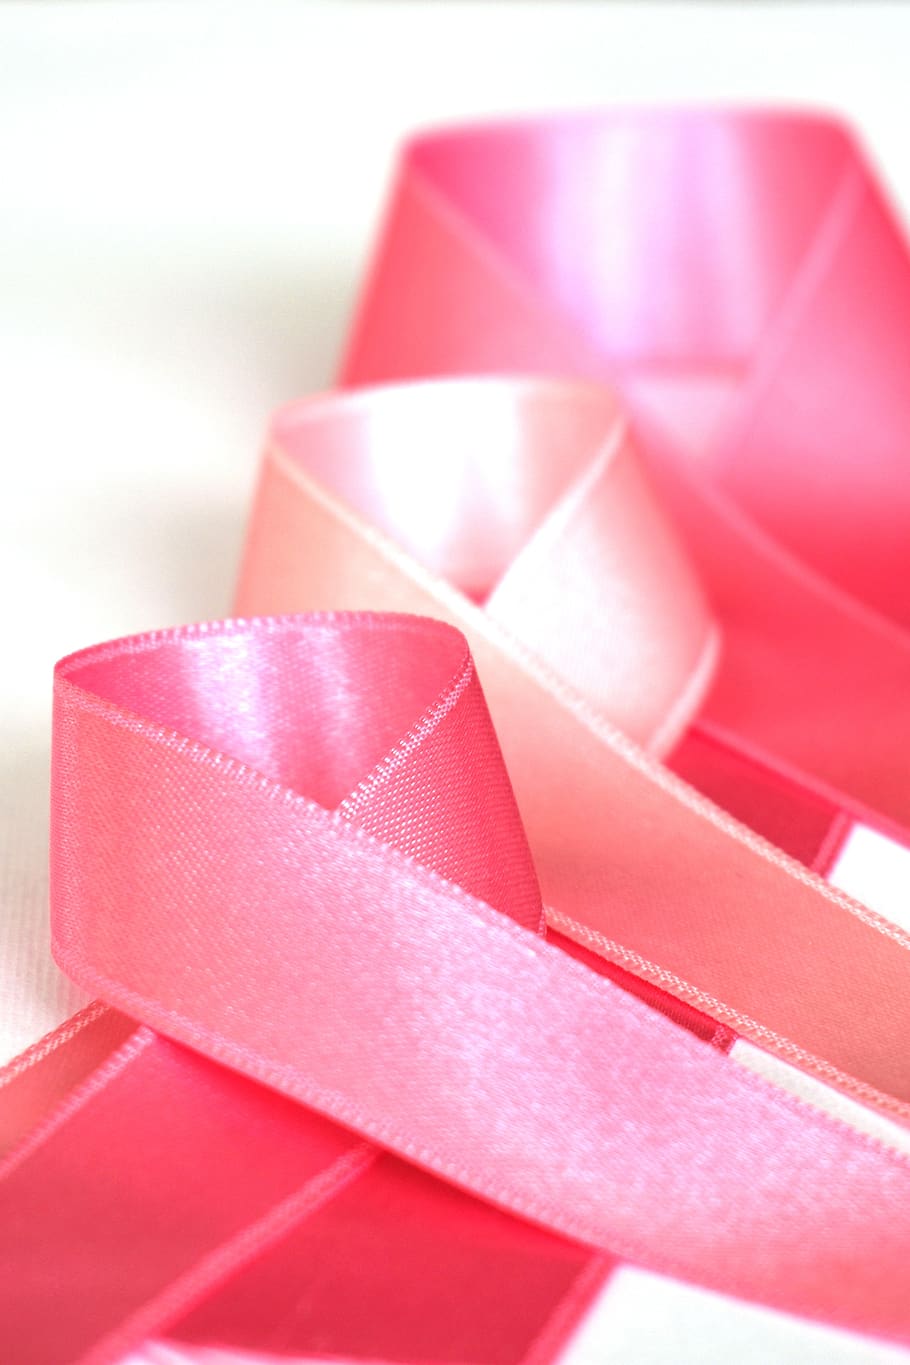 cinta rosada, mes de concientización sobre el cáncer de mama, cáncer de mama, prevención, salud, octubre, rosa, cinta, médico, enfermedad